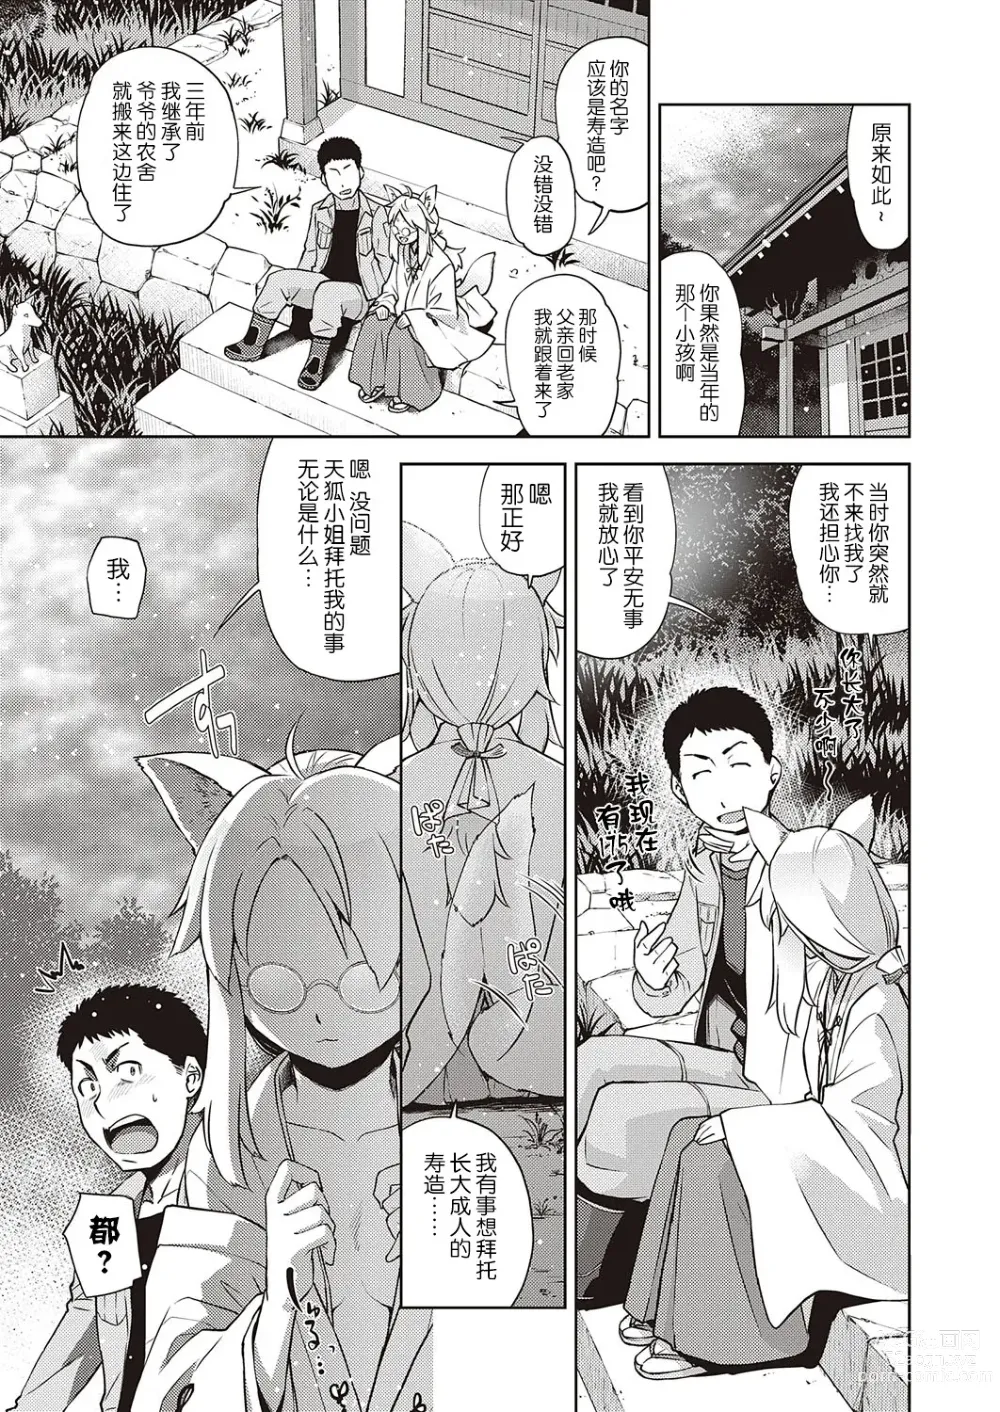 Page 7 of manga Mate ba Megane no Kitsune ari